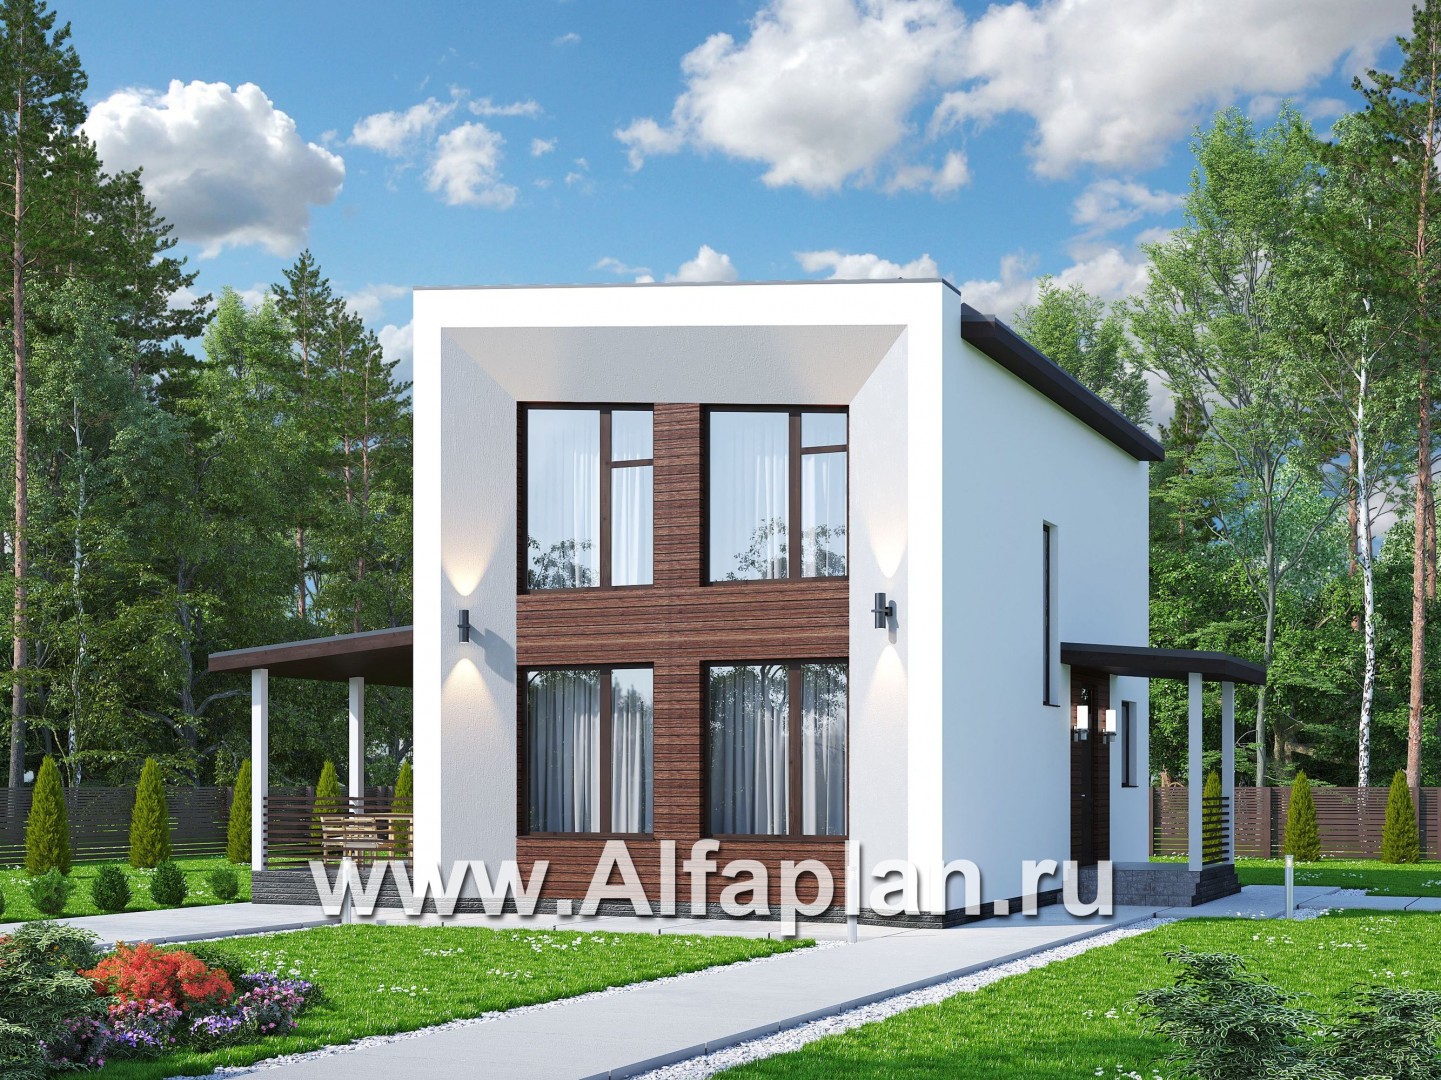 Проекты домов Альфаплан - «Сигма» - проект двухэтажного каркасного домав скандинавском стиле - основное изображение